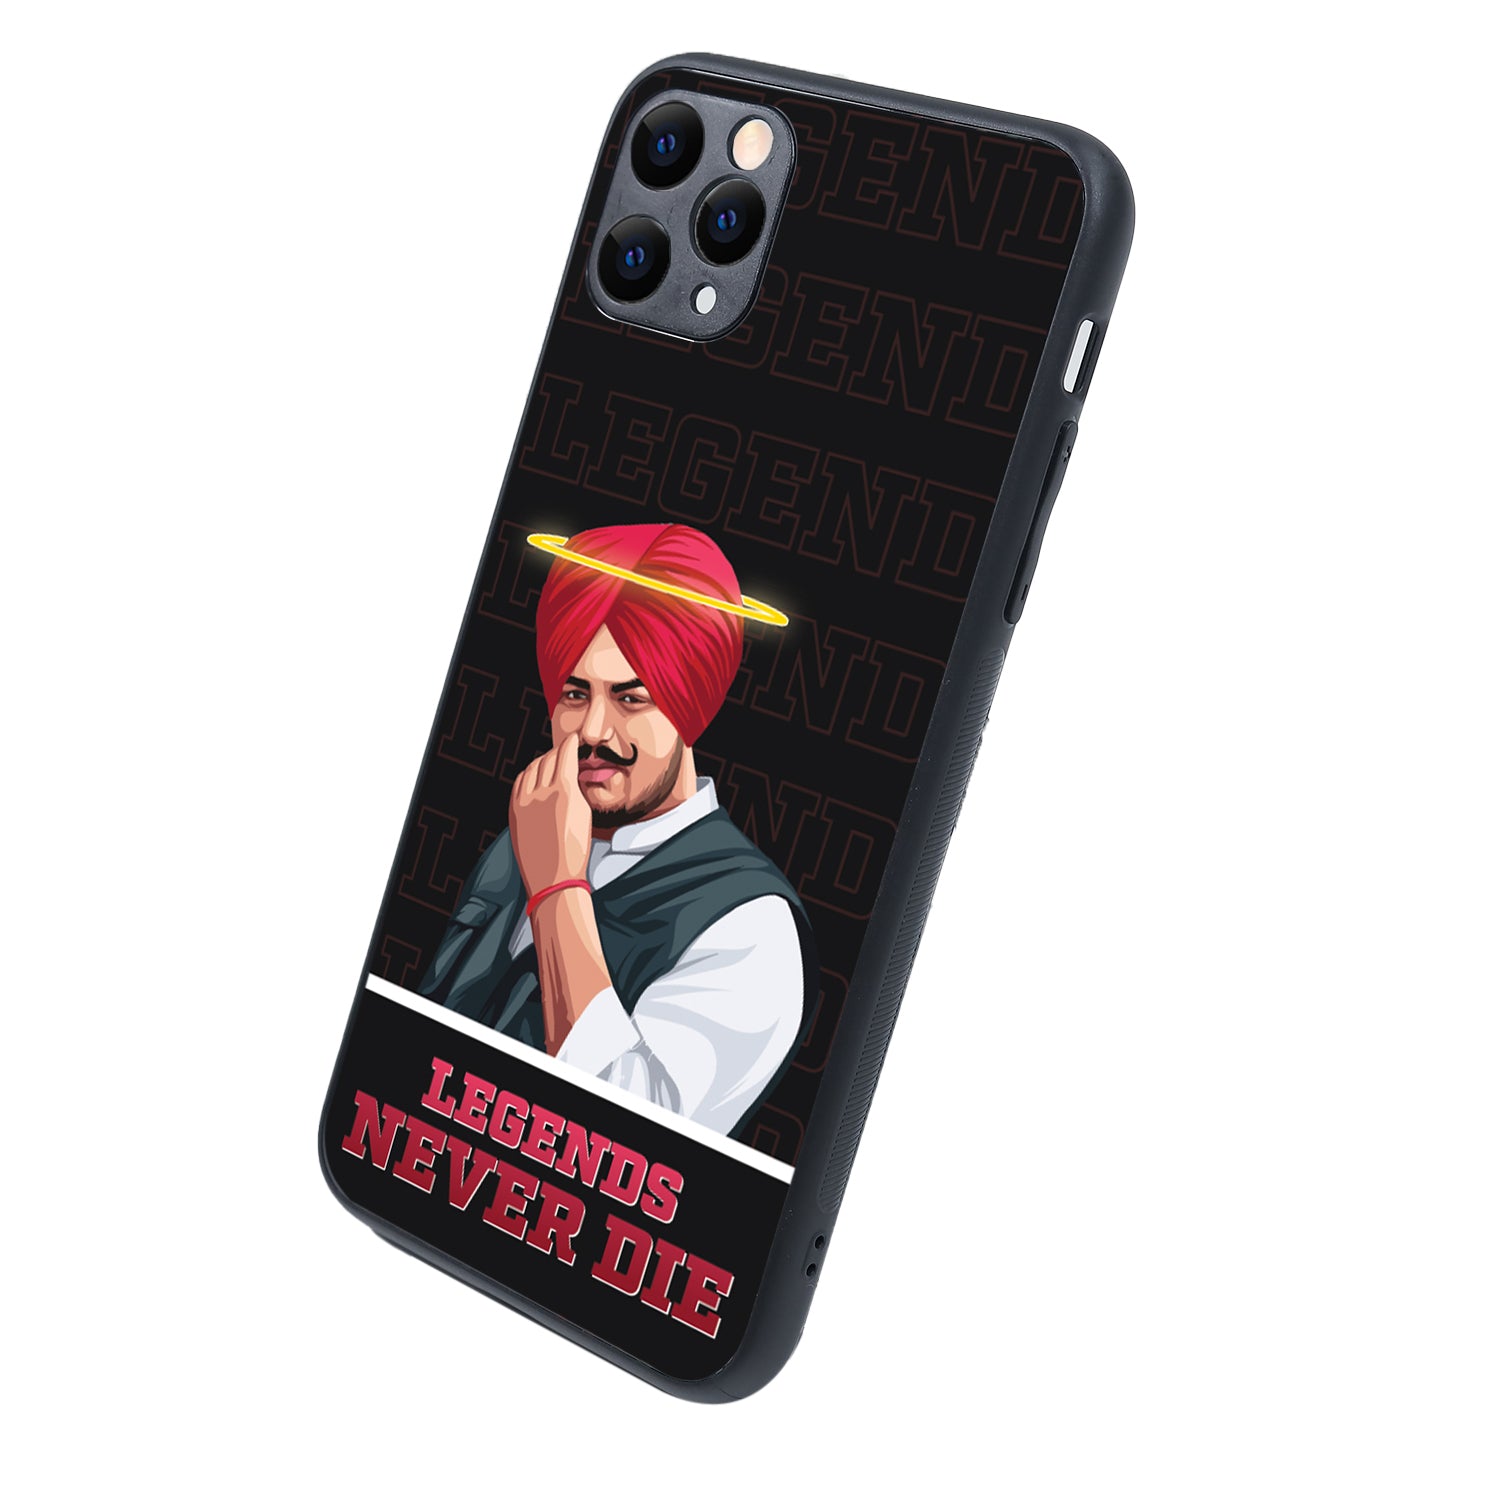 Legend Never Die Black Sidhu Moosewala iPhone 11 Pro Max Case